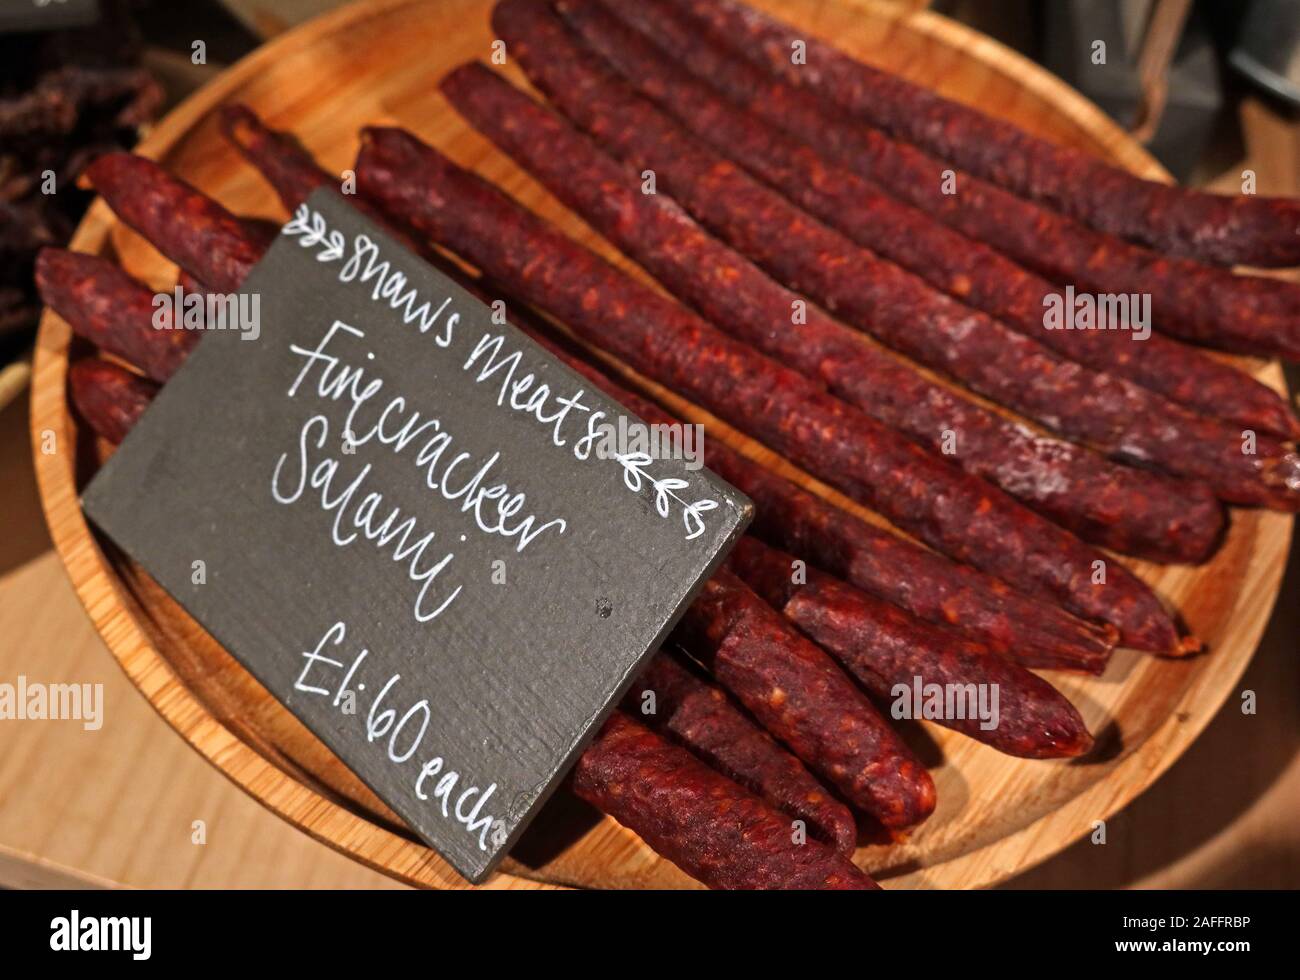 Handwerkliche Salami, Shaws Fleisch, auf dem Bio-Markt, Bauernmarkt, Gloucestershire, Südwestengland, Großbritannien, Fleischprodukte, aus Cumbria Stockfoto